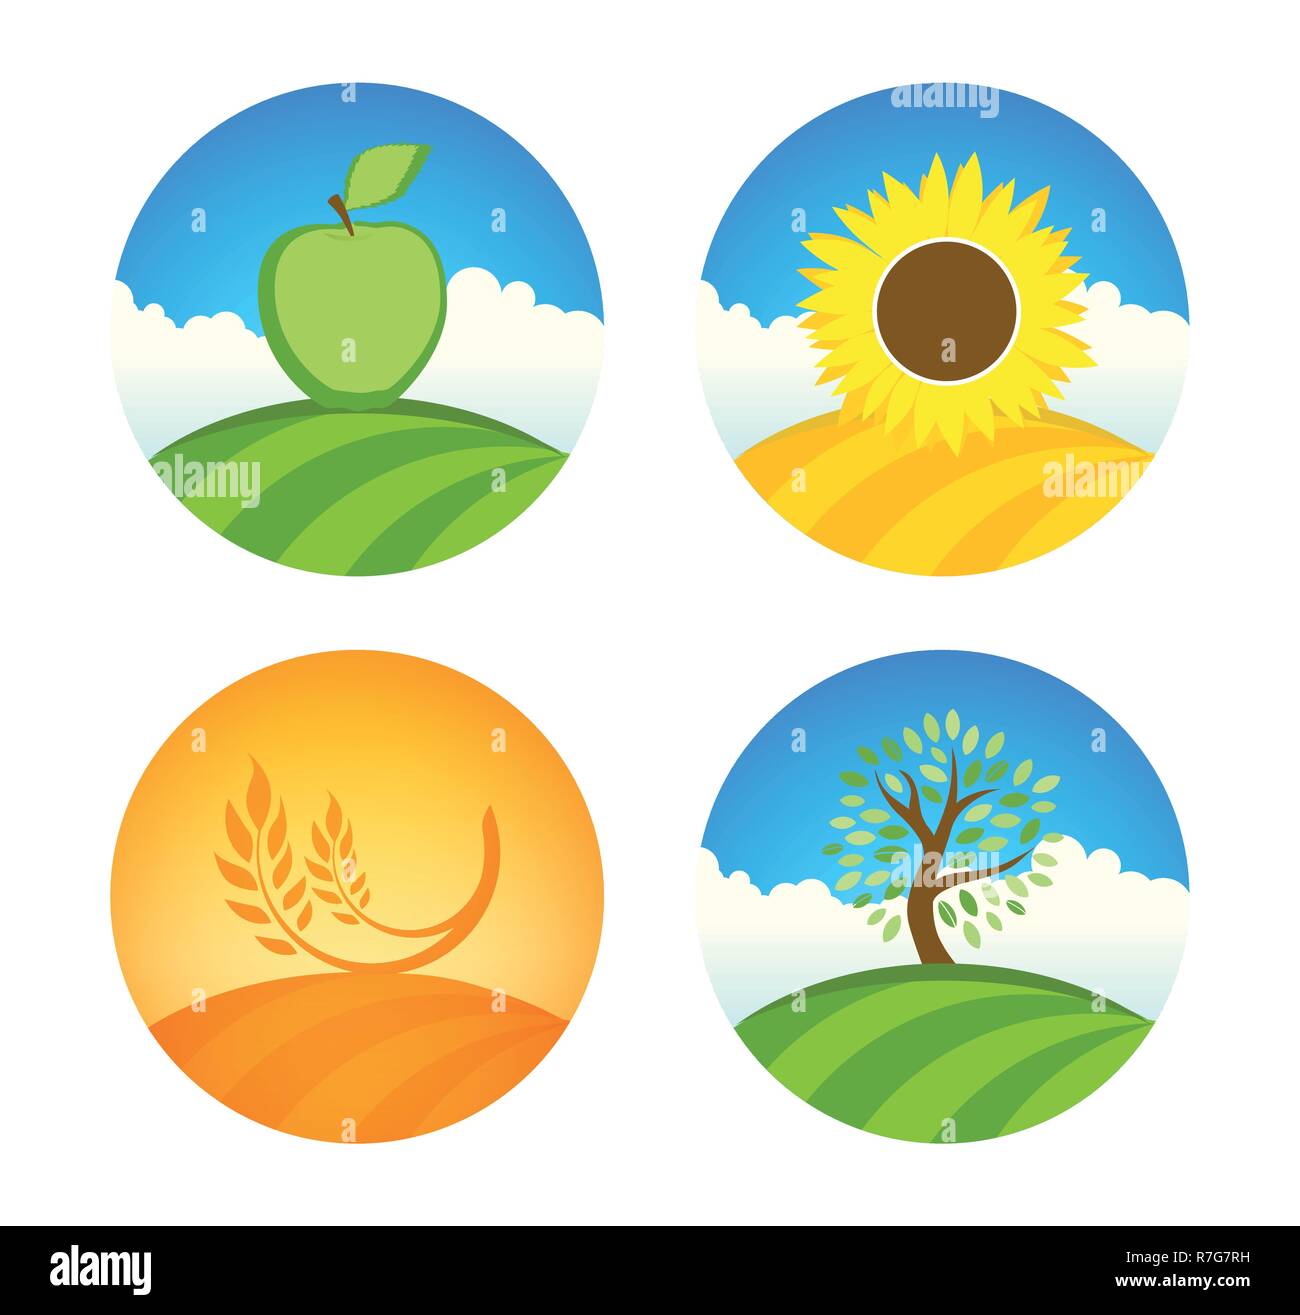 Vektor Logos mit Apple, Sonnenblumen und Weizen natur Bauernhof Ernte auf bunte runde Abbildung isoliert auf Weiss. Stock Vektor